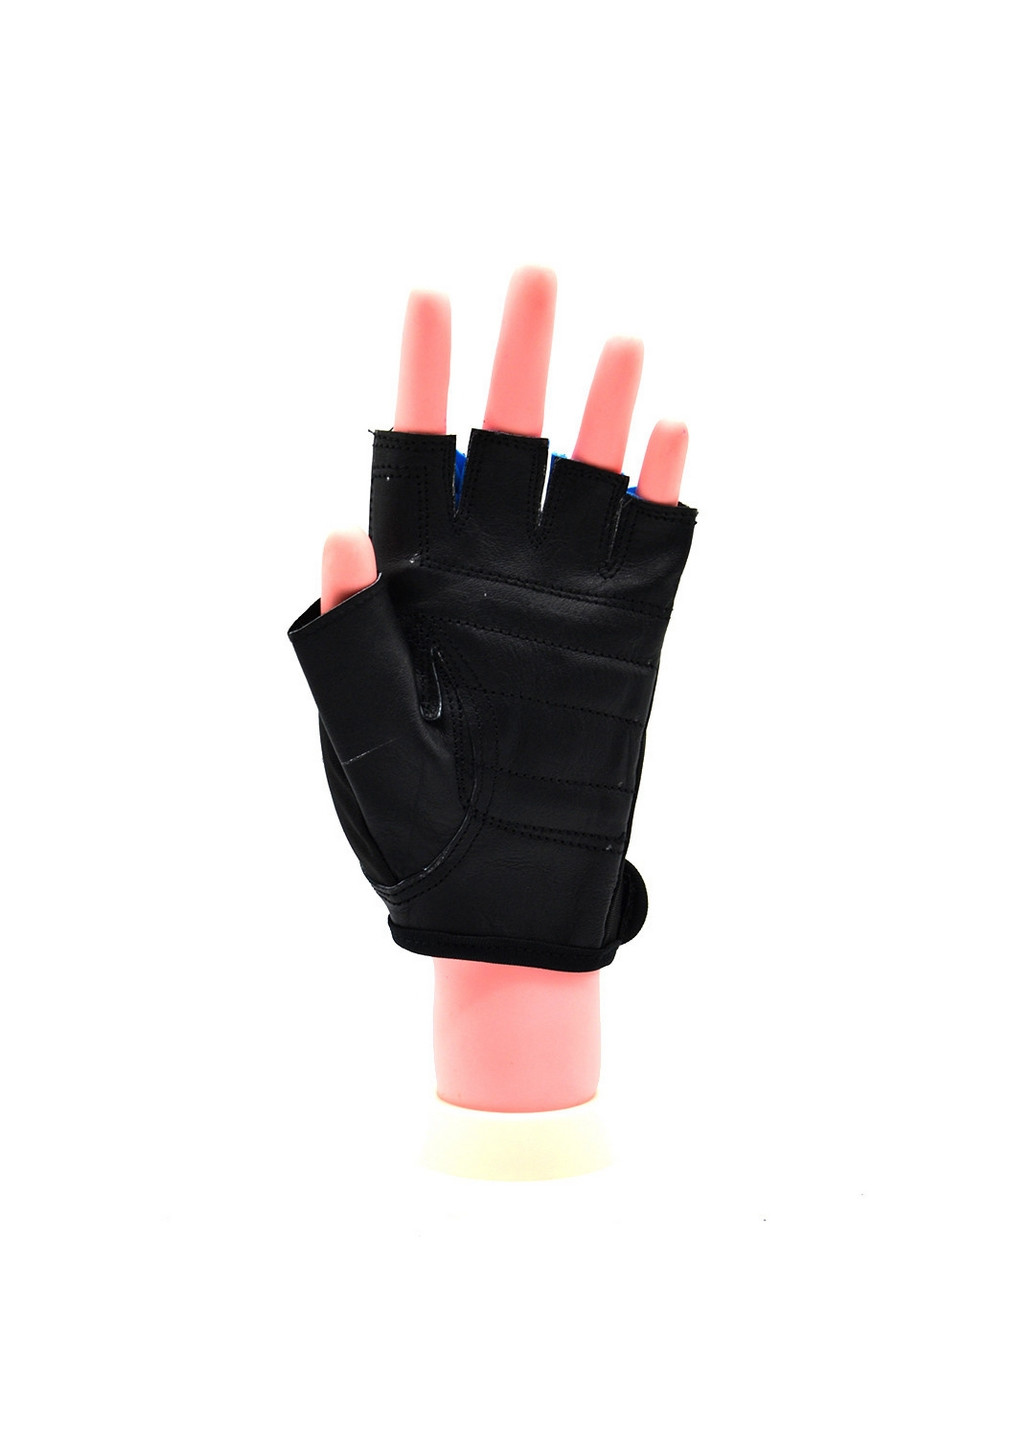 Унисекс перчатки для фитнеса XXL Mad Max (267656625)